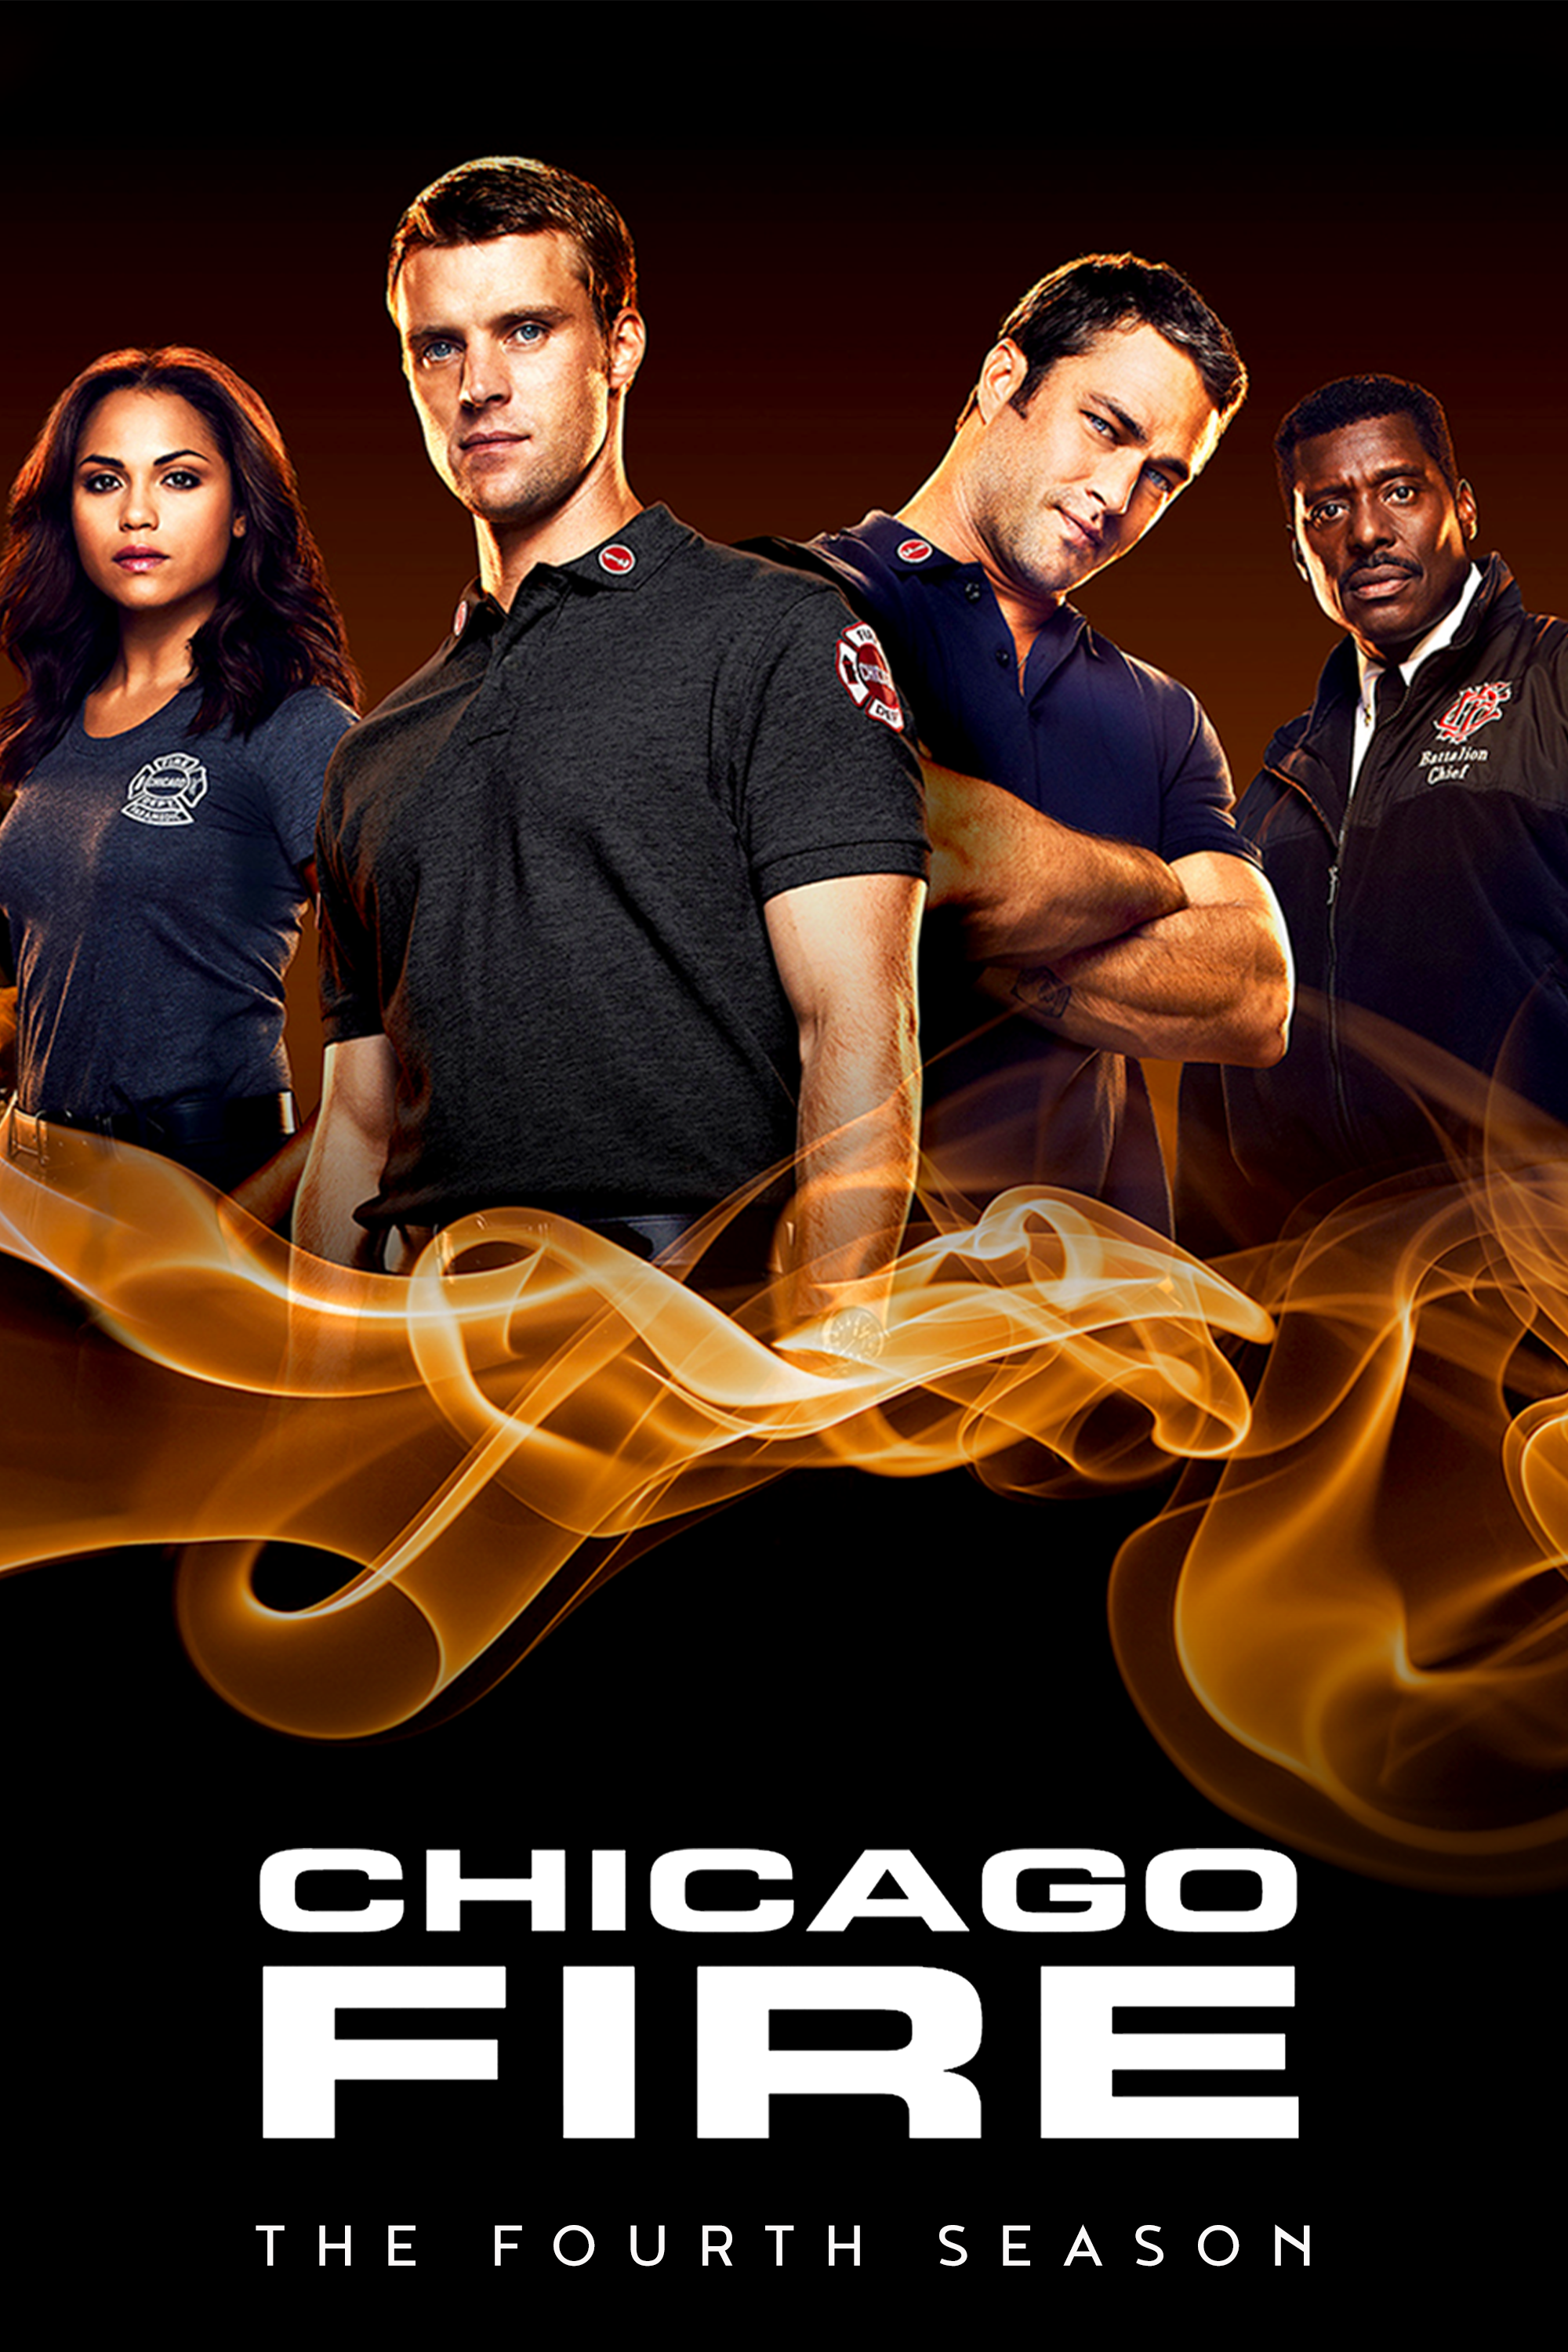 ดูหนังออนไลน์ Chicago Fire Season 4 EP.6 ชิคาโก้ ไฟร์ หน่วยดับเพลิงท้านรก ซีซั่นที่ 4 ตอนที่ 6